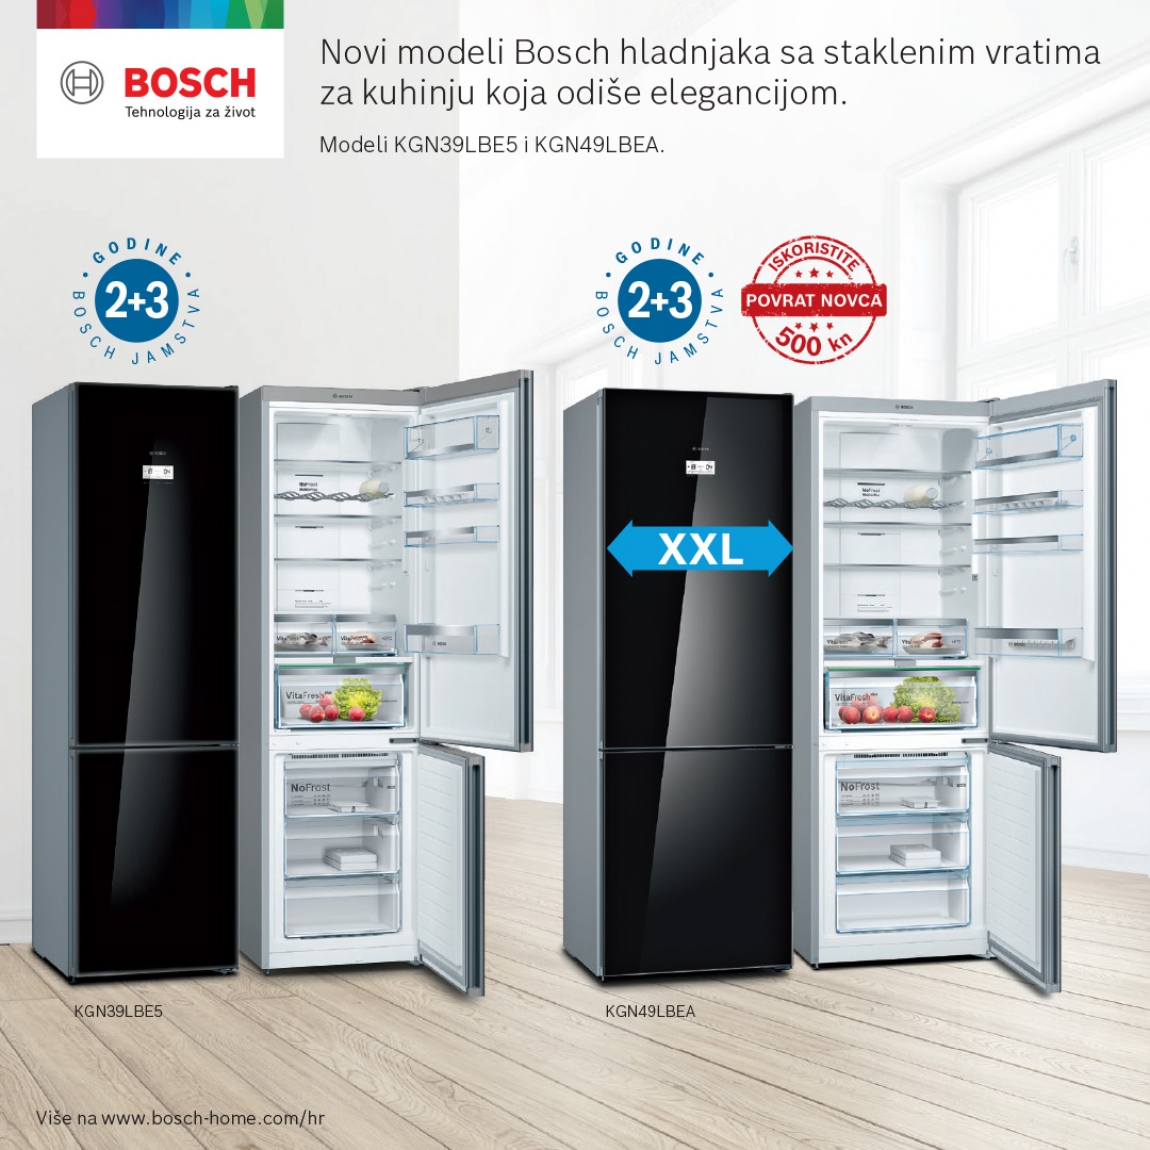 Bosch hladnjak – za kuhinju koja odiše elegancijom!